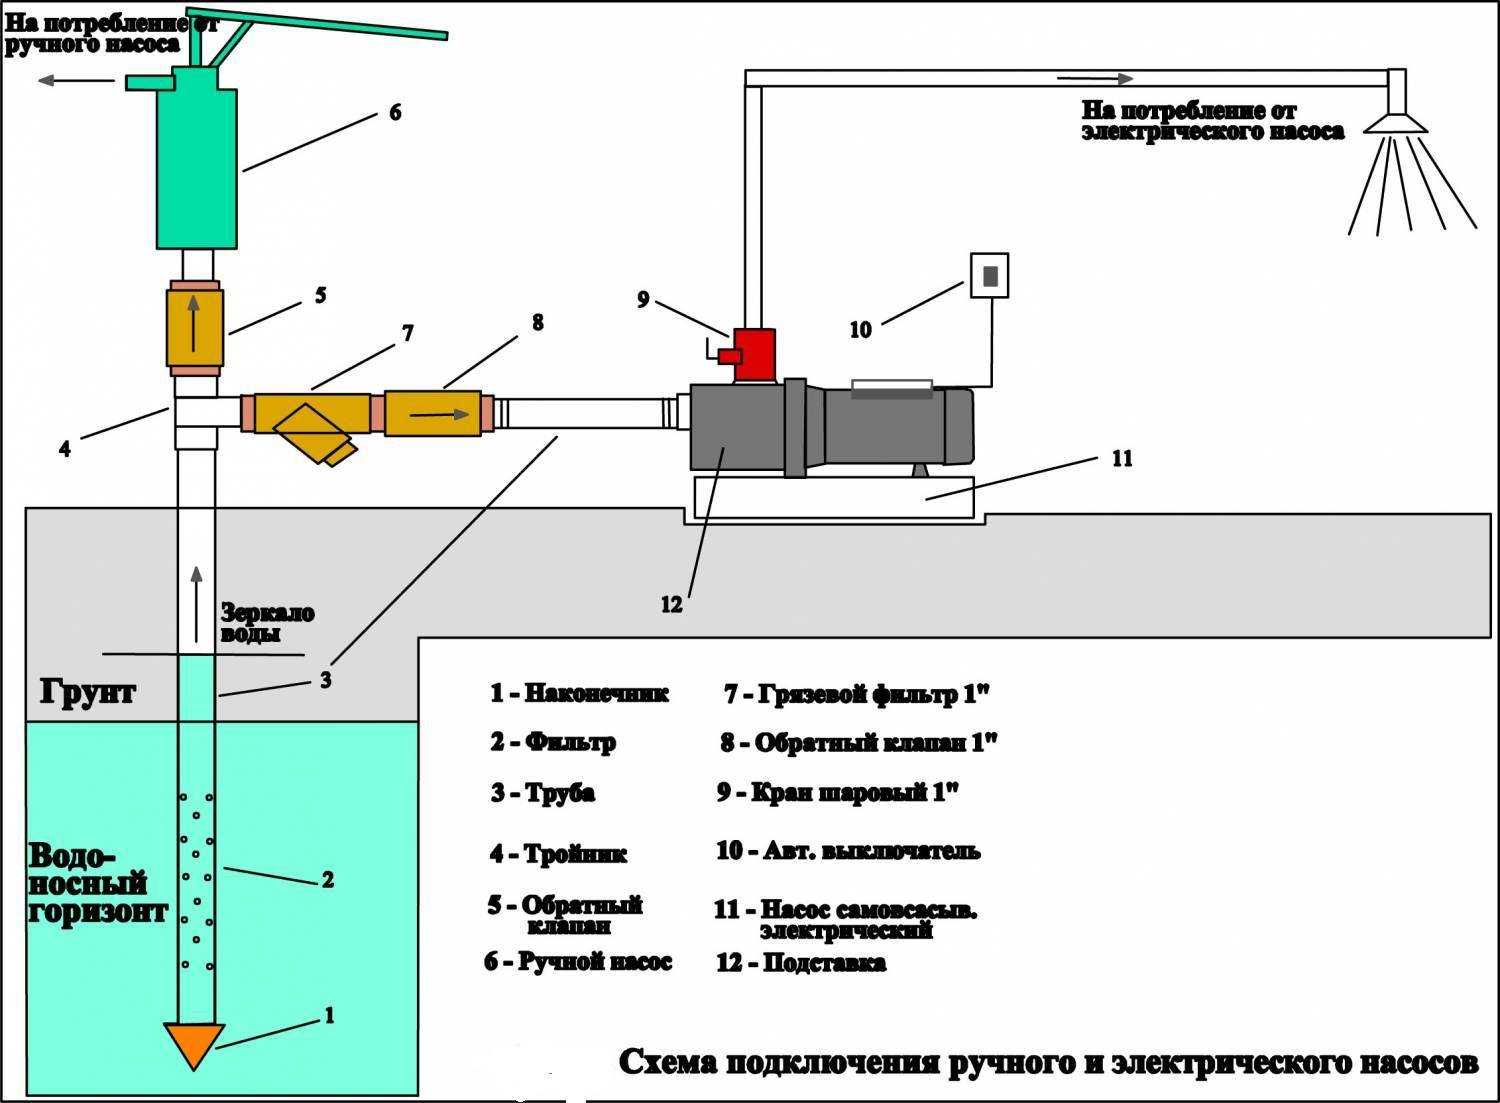 Схема подключения реле насосной станции и регулирование